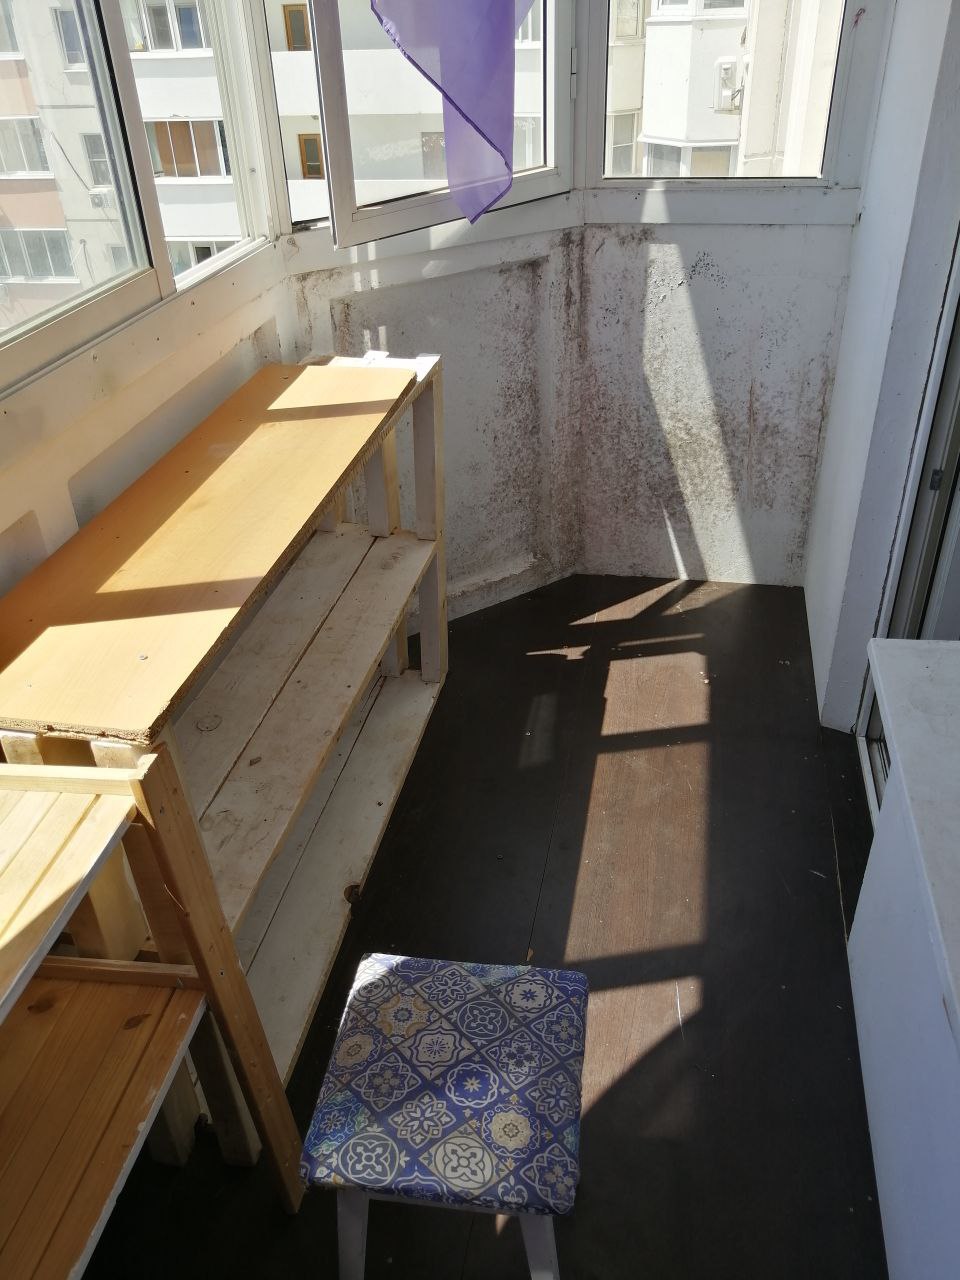 Квартиранты утеплили балкон фанерой которая намокла и начала подгнивать